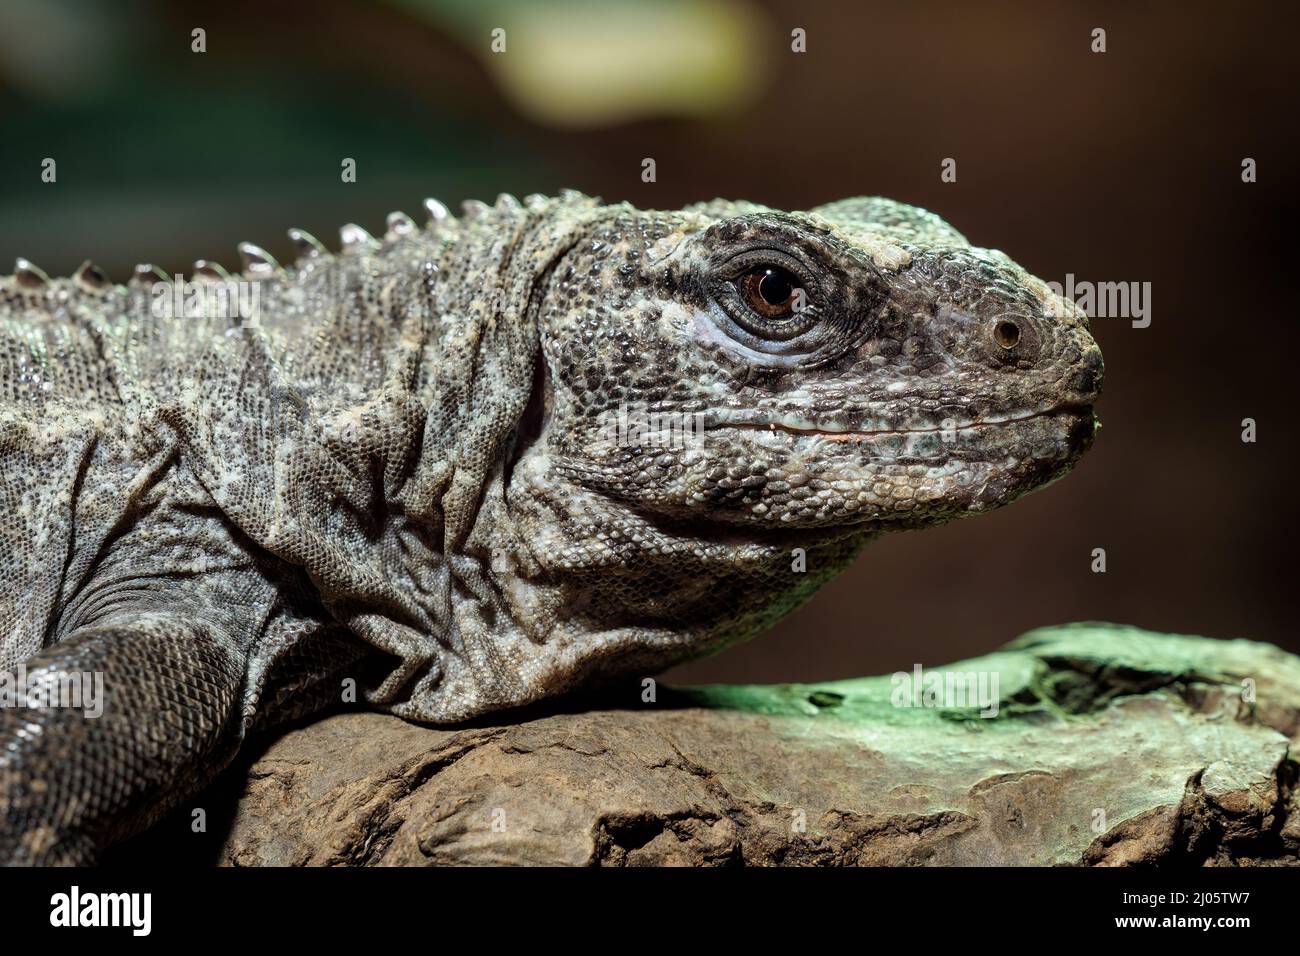 L'Utila Iguana sur une branche (Ctenosaura bakeri) est une espèce de lézard en danger critique d'extinction. Banque D'Images